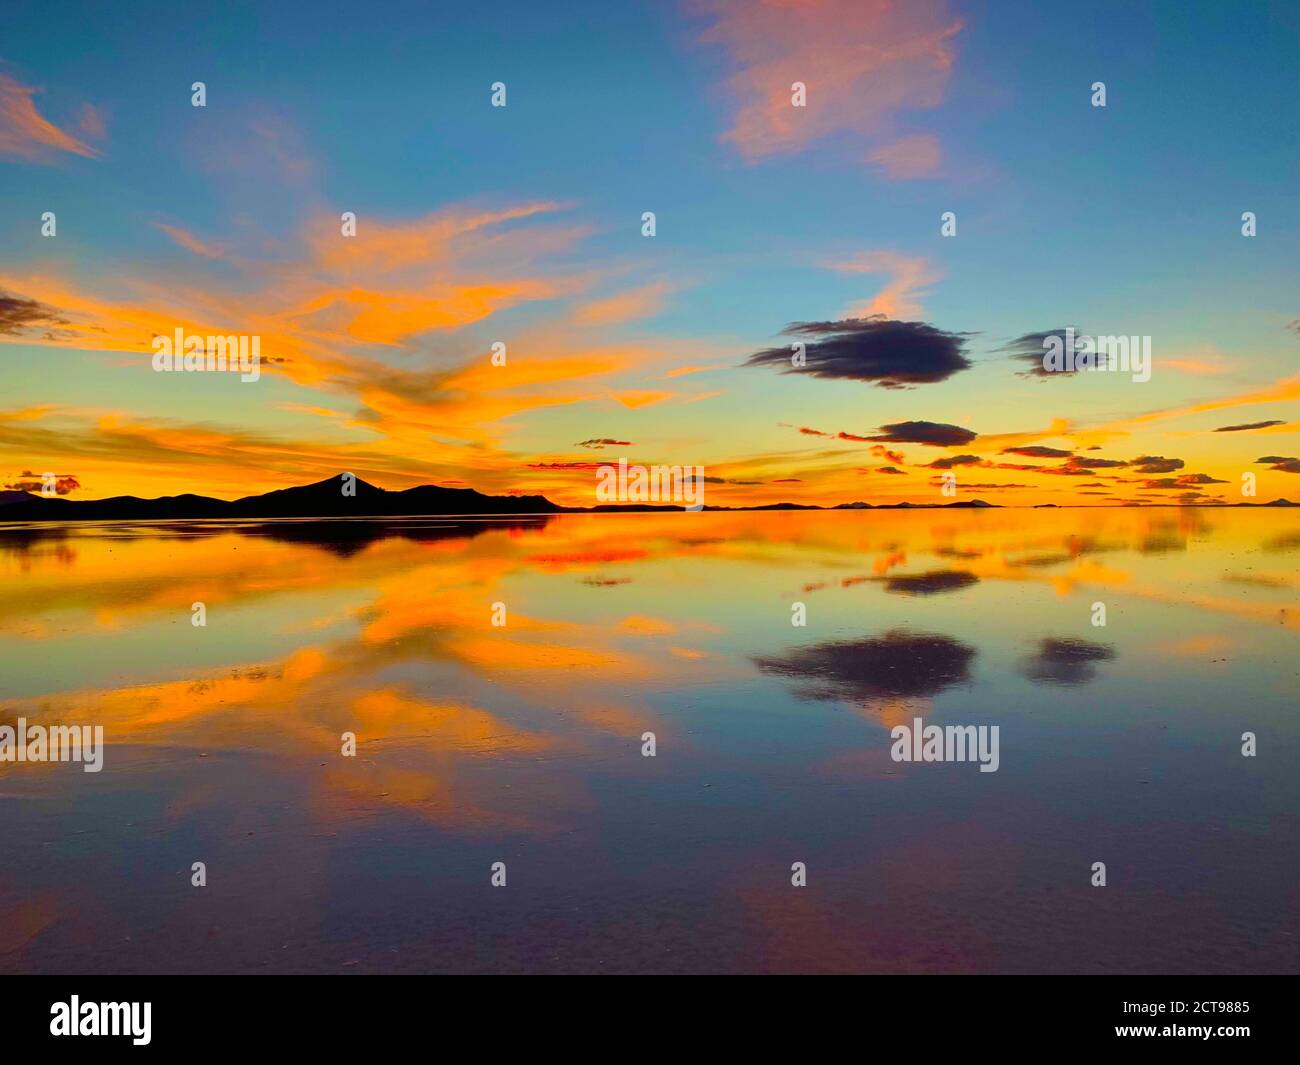 Atemberaubender orangefarbener Sonnenuntergang. Heller Sonnenuntergang Himmel. Erstaunliche Reflexion der himmlischen Wolken im Seewasser. Uyuni Salt Flats, Bolivien. Surreale Landschaft. Stockfoto